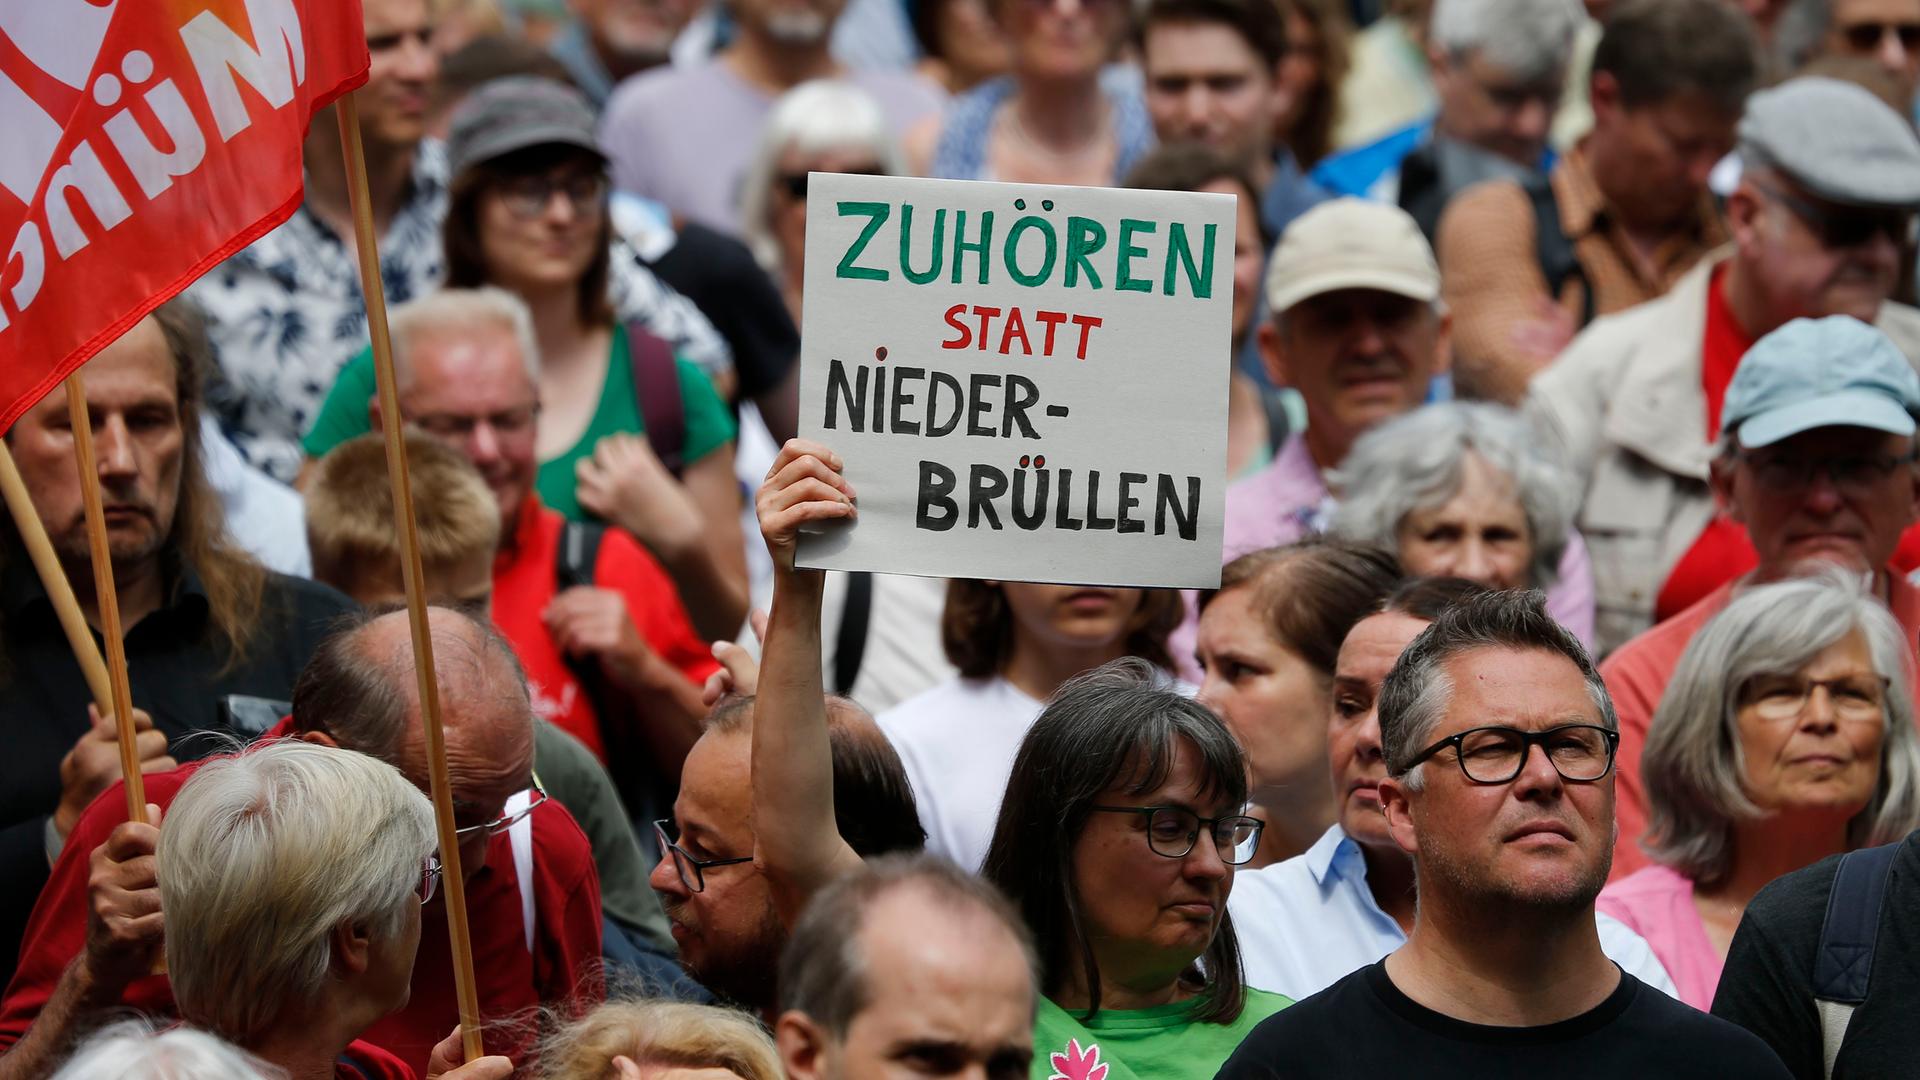 Demonstrierende mit einem Transparent mit der Aufschrift "Zuhören statt niederbrüllen" stehen am Münchner Odeonsplatz.